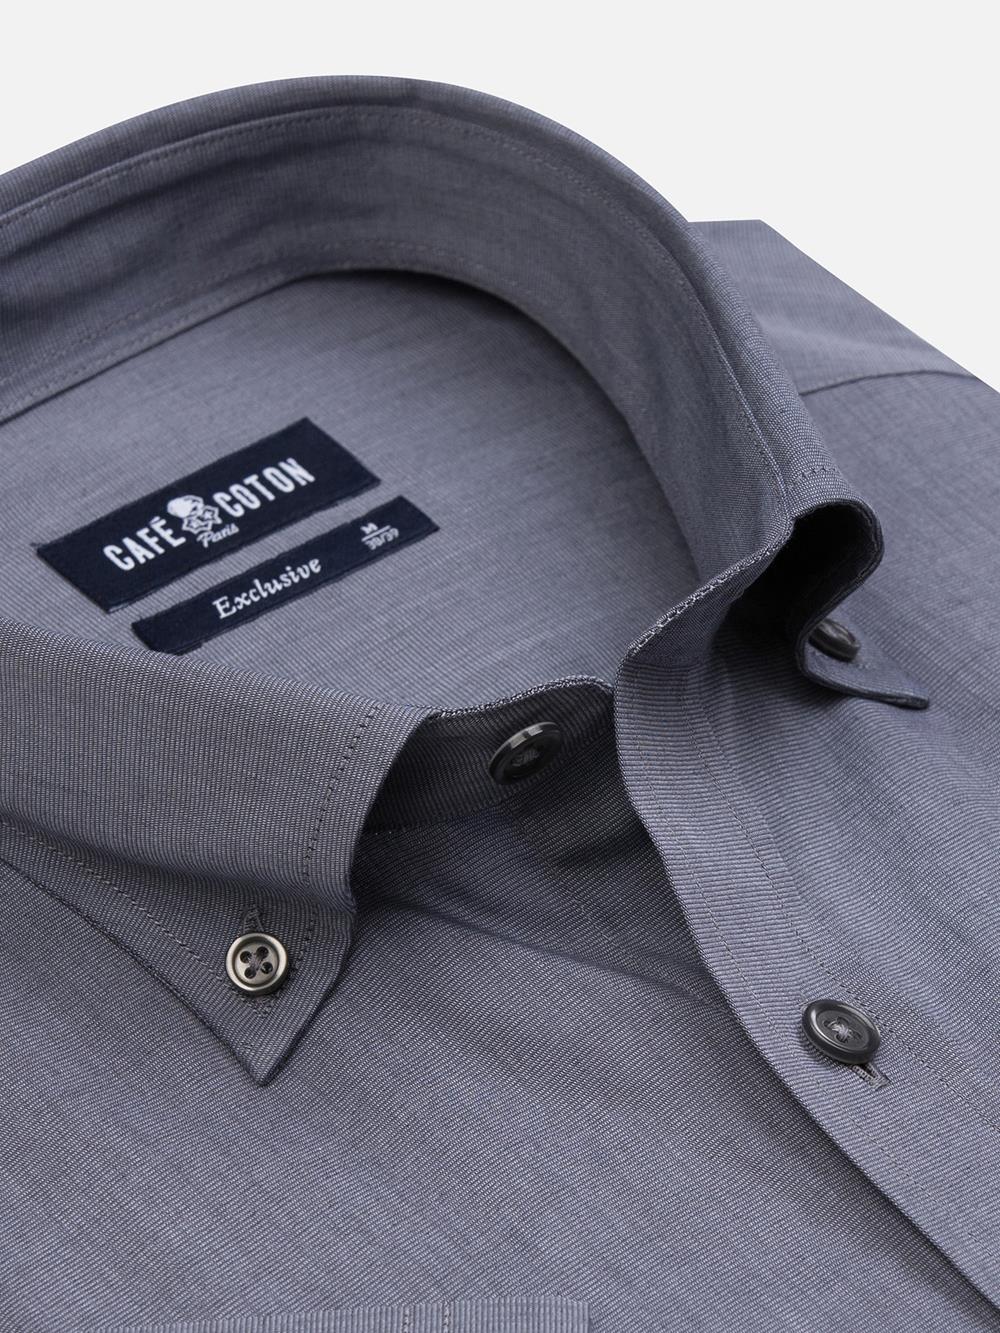  Chemise manches courtes en fil à fil grise - Col boutonné